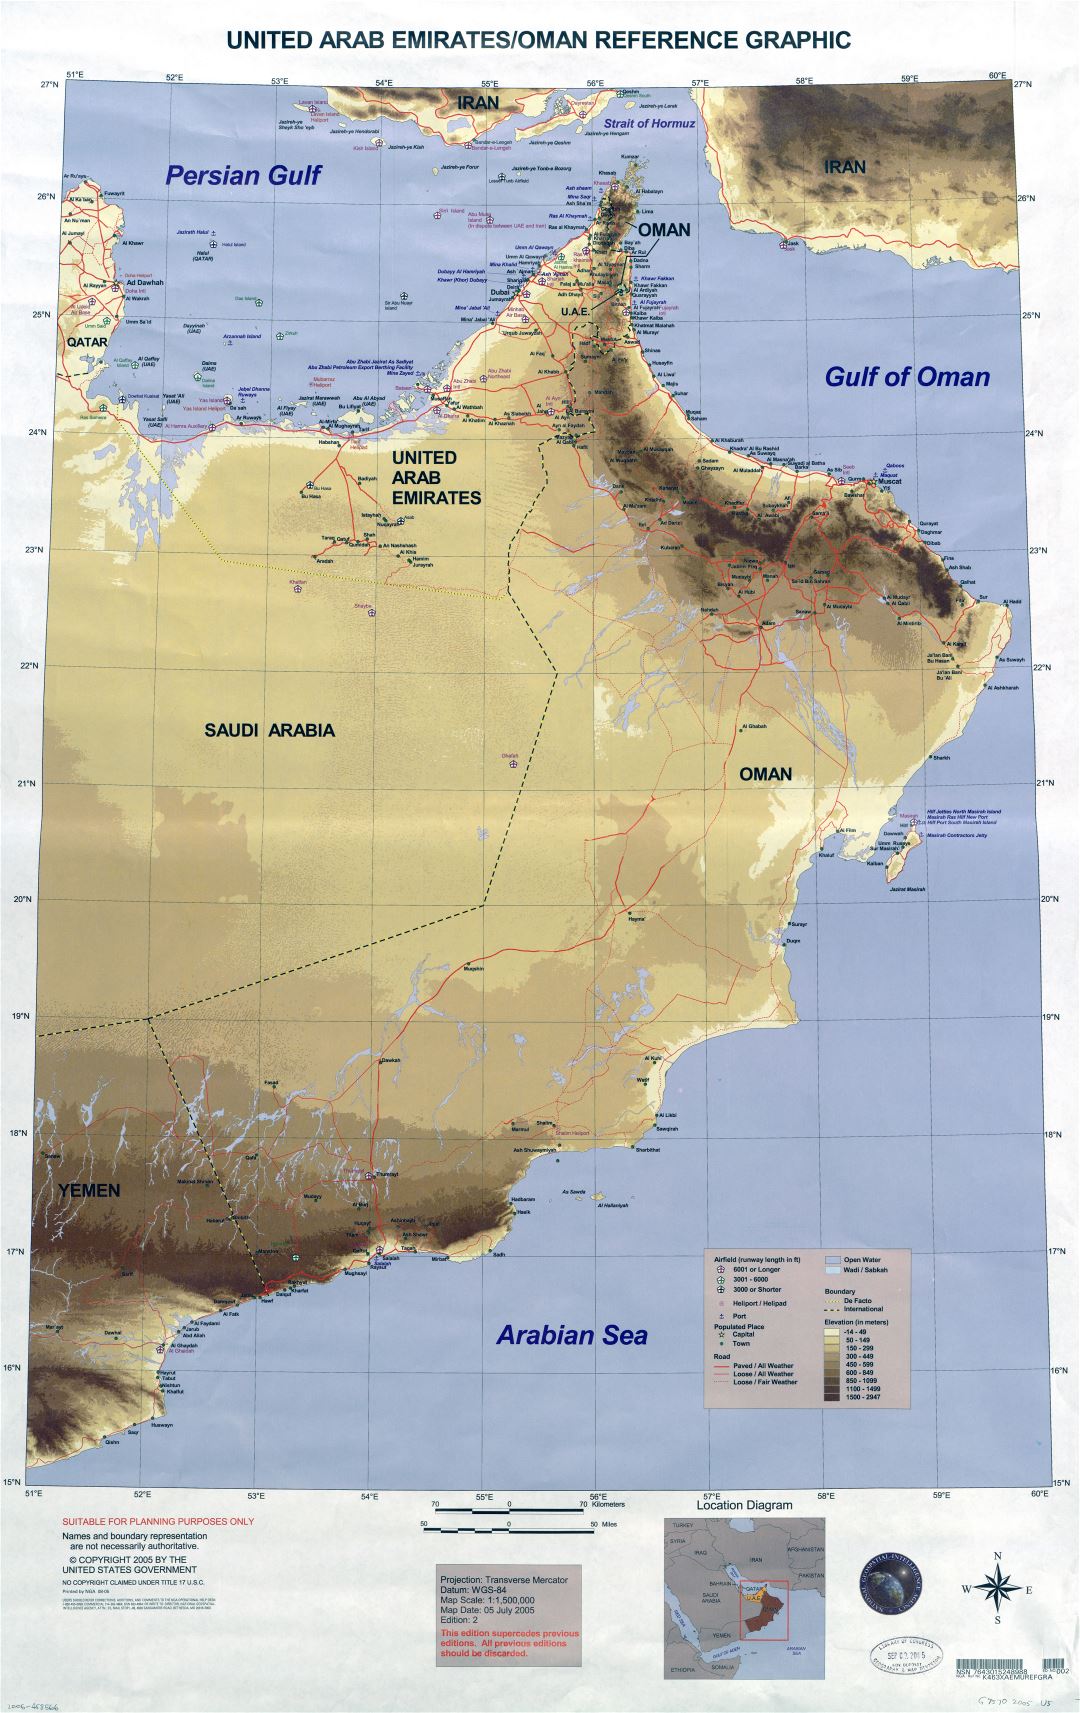 Крупномасштабная детальная карта высот Объединенных Арабских Эмиратов и Омана с аэропортами, портами, вертолетными площадками, городами, деревнями, дорогами и другими пометками - 2005